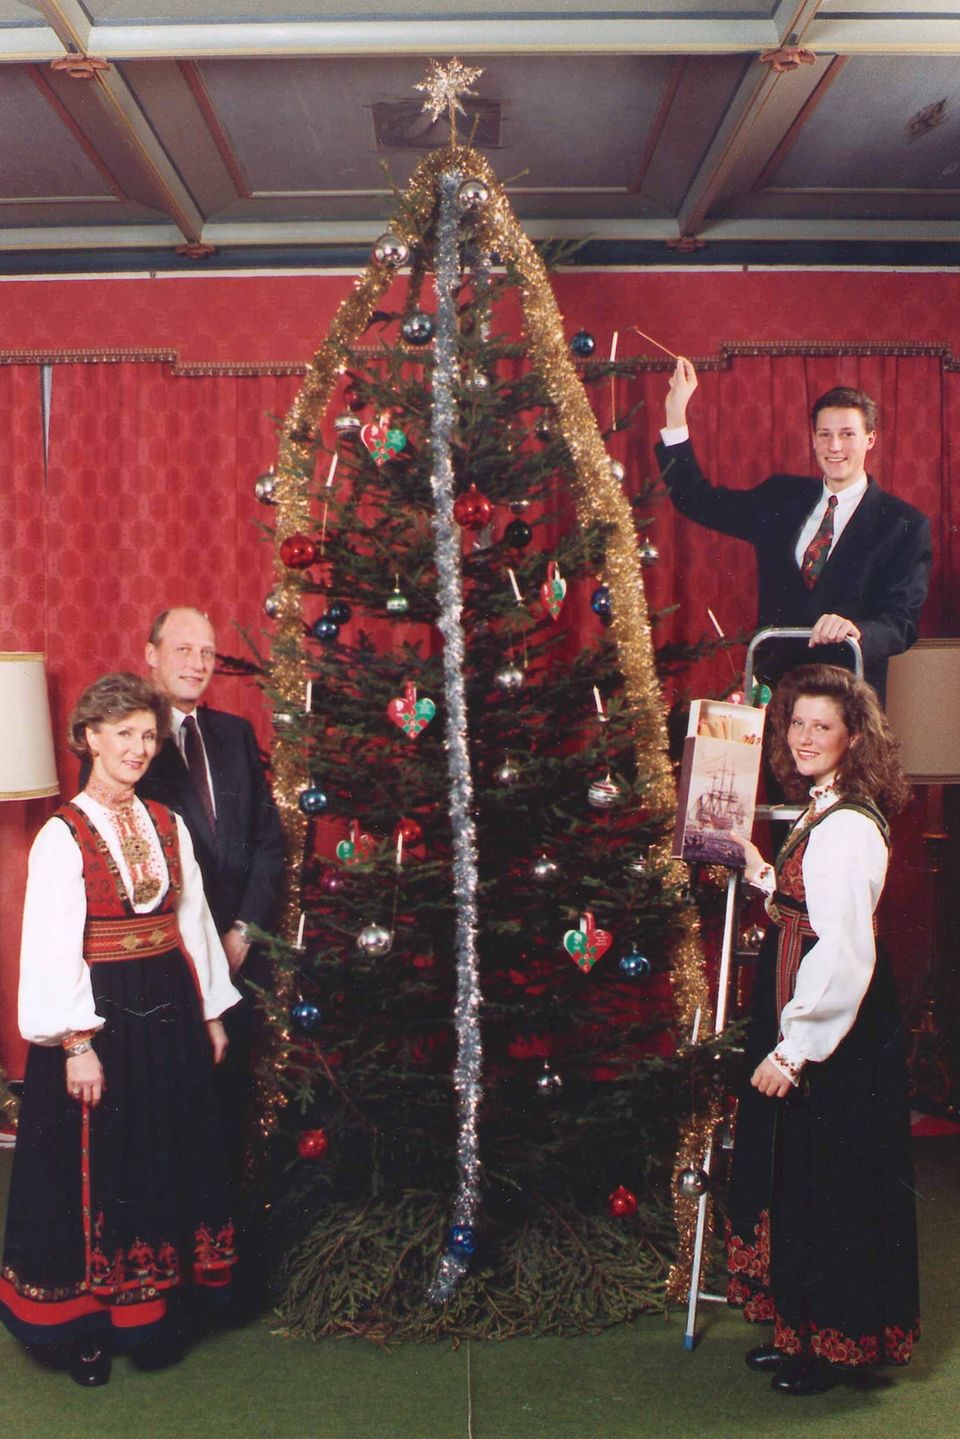 1996  Kronprinz Haakon und Prinzessin Märtha Louise schmücken mit ihren Eltern Königin Sonja und König Harald den Weihnachtsbaum.